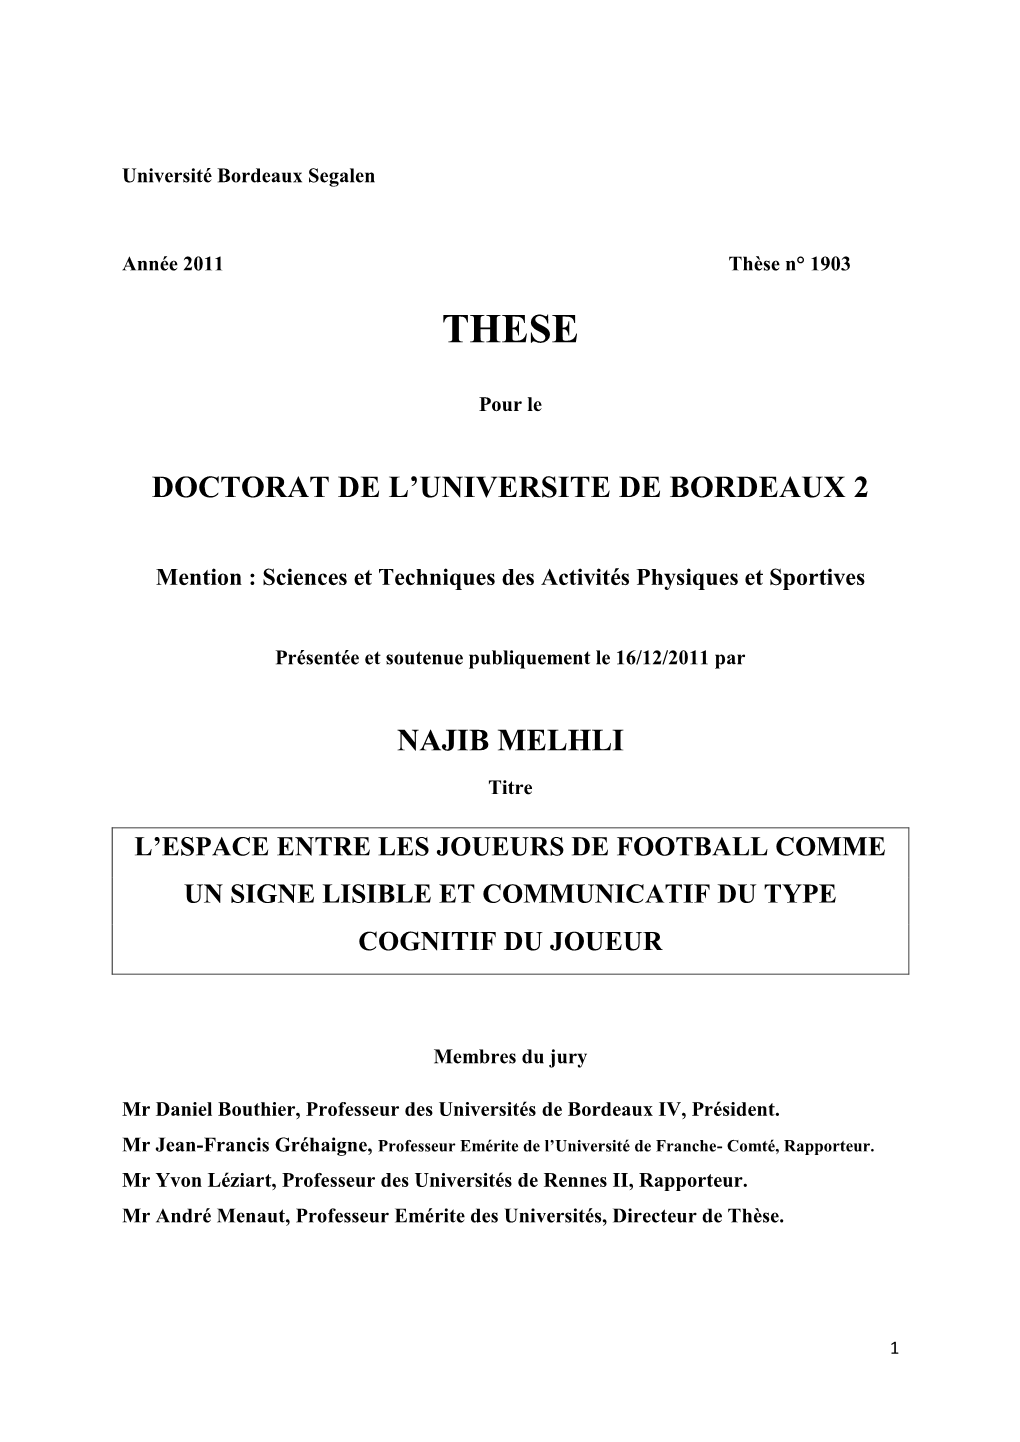 Doctorat De L'universite De Bordeaux 2 Najib Melhli